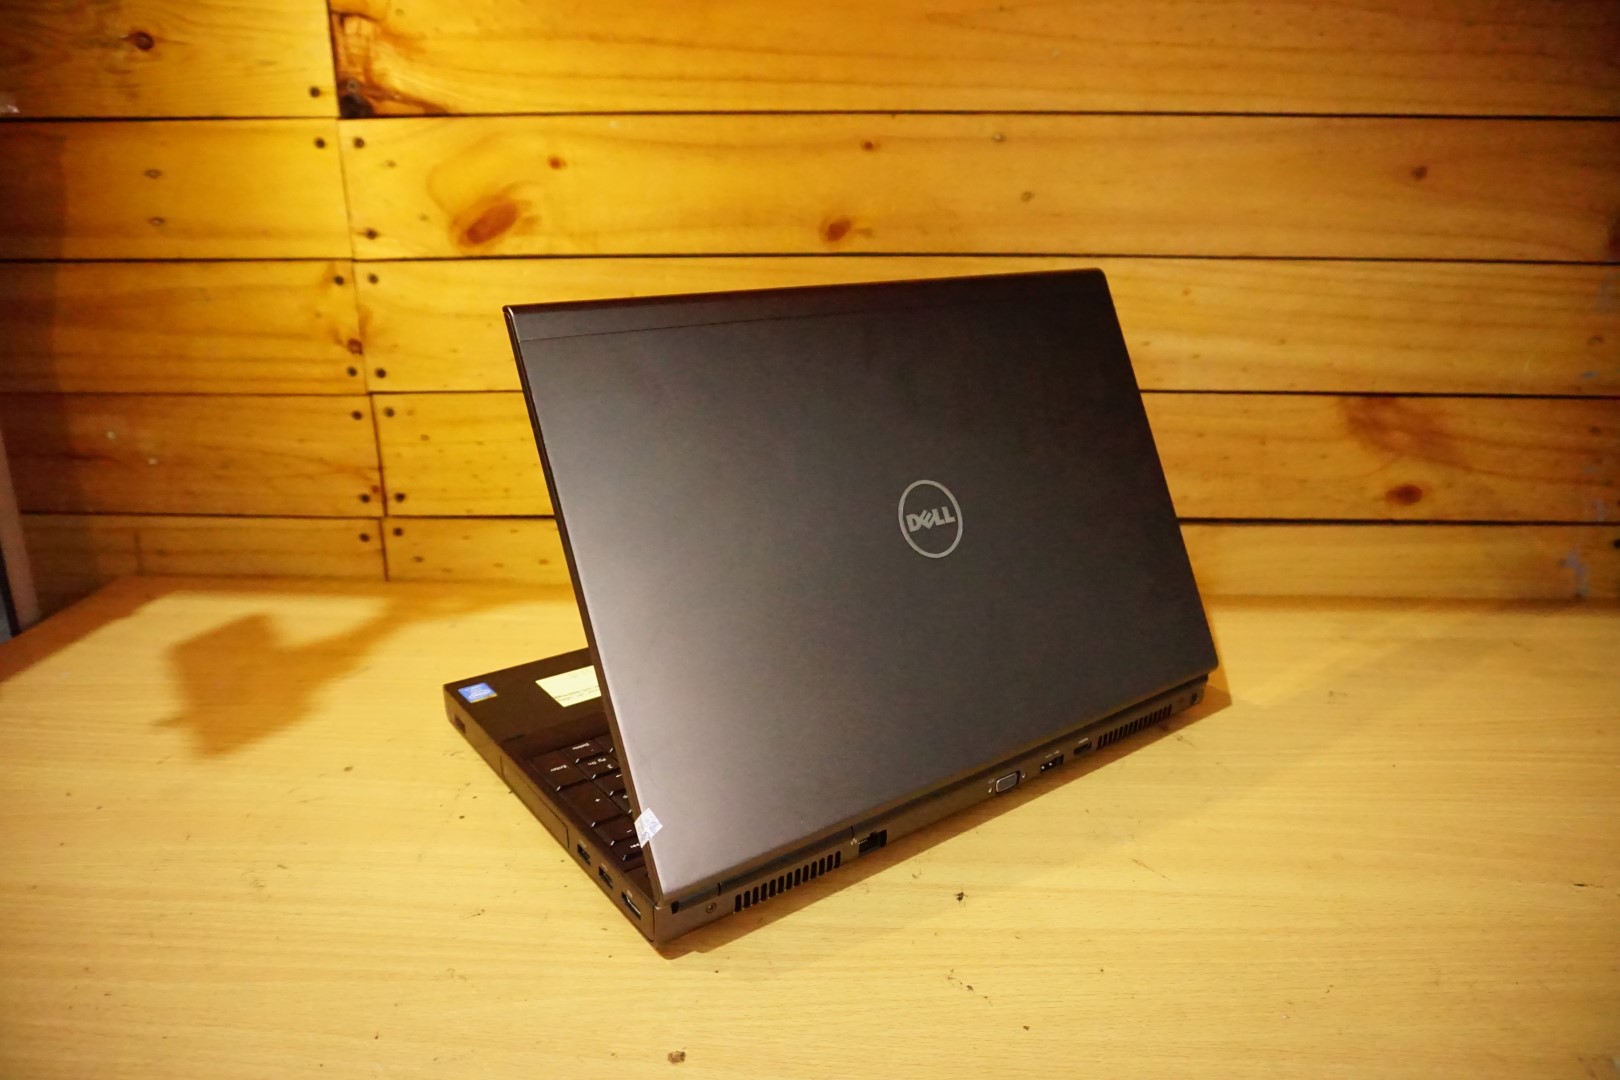 Jual Laptop Dell Precision M4800 Grafis